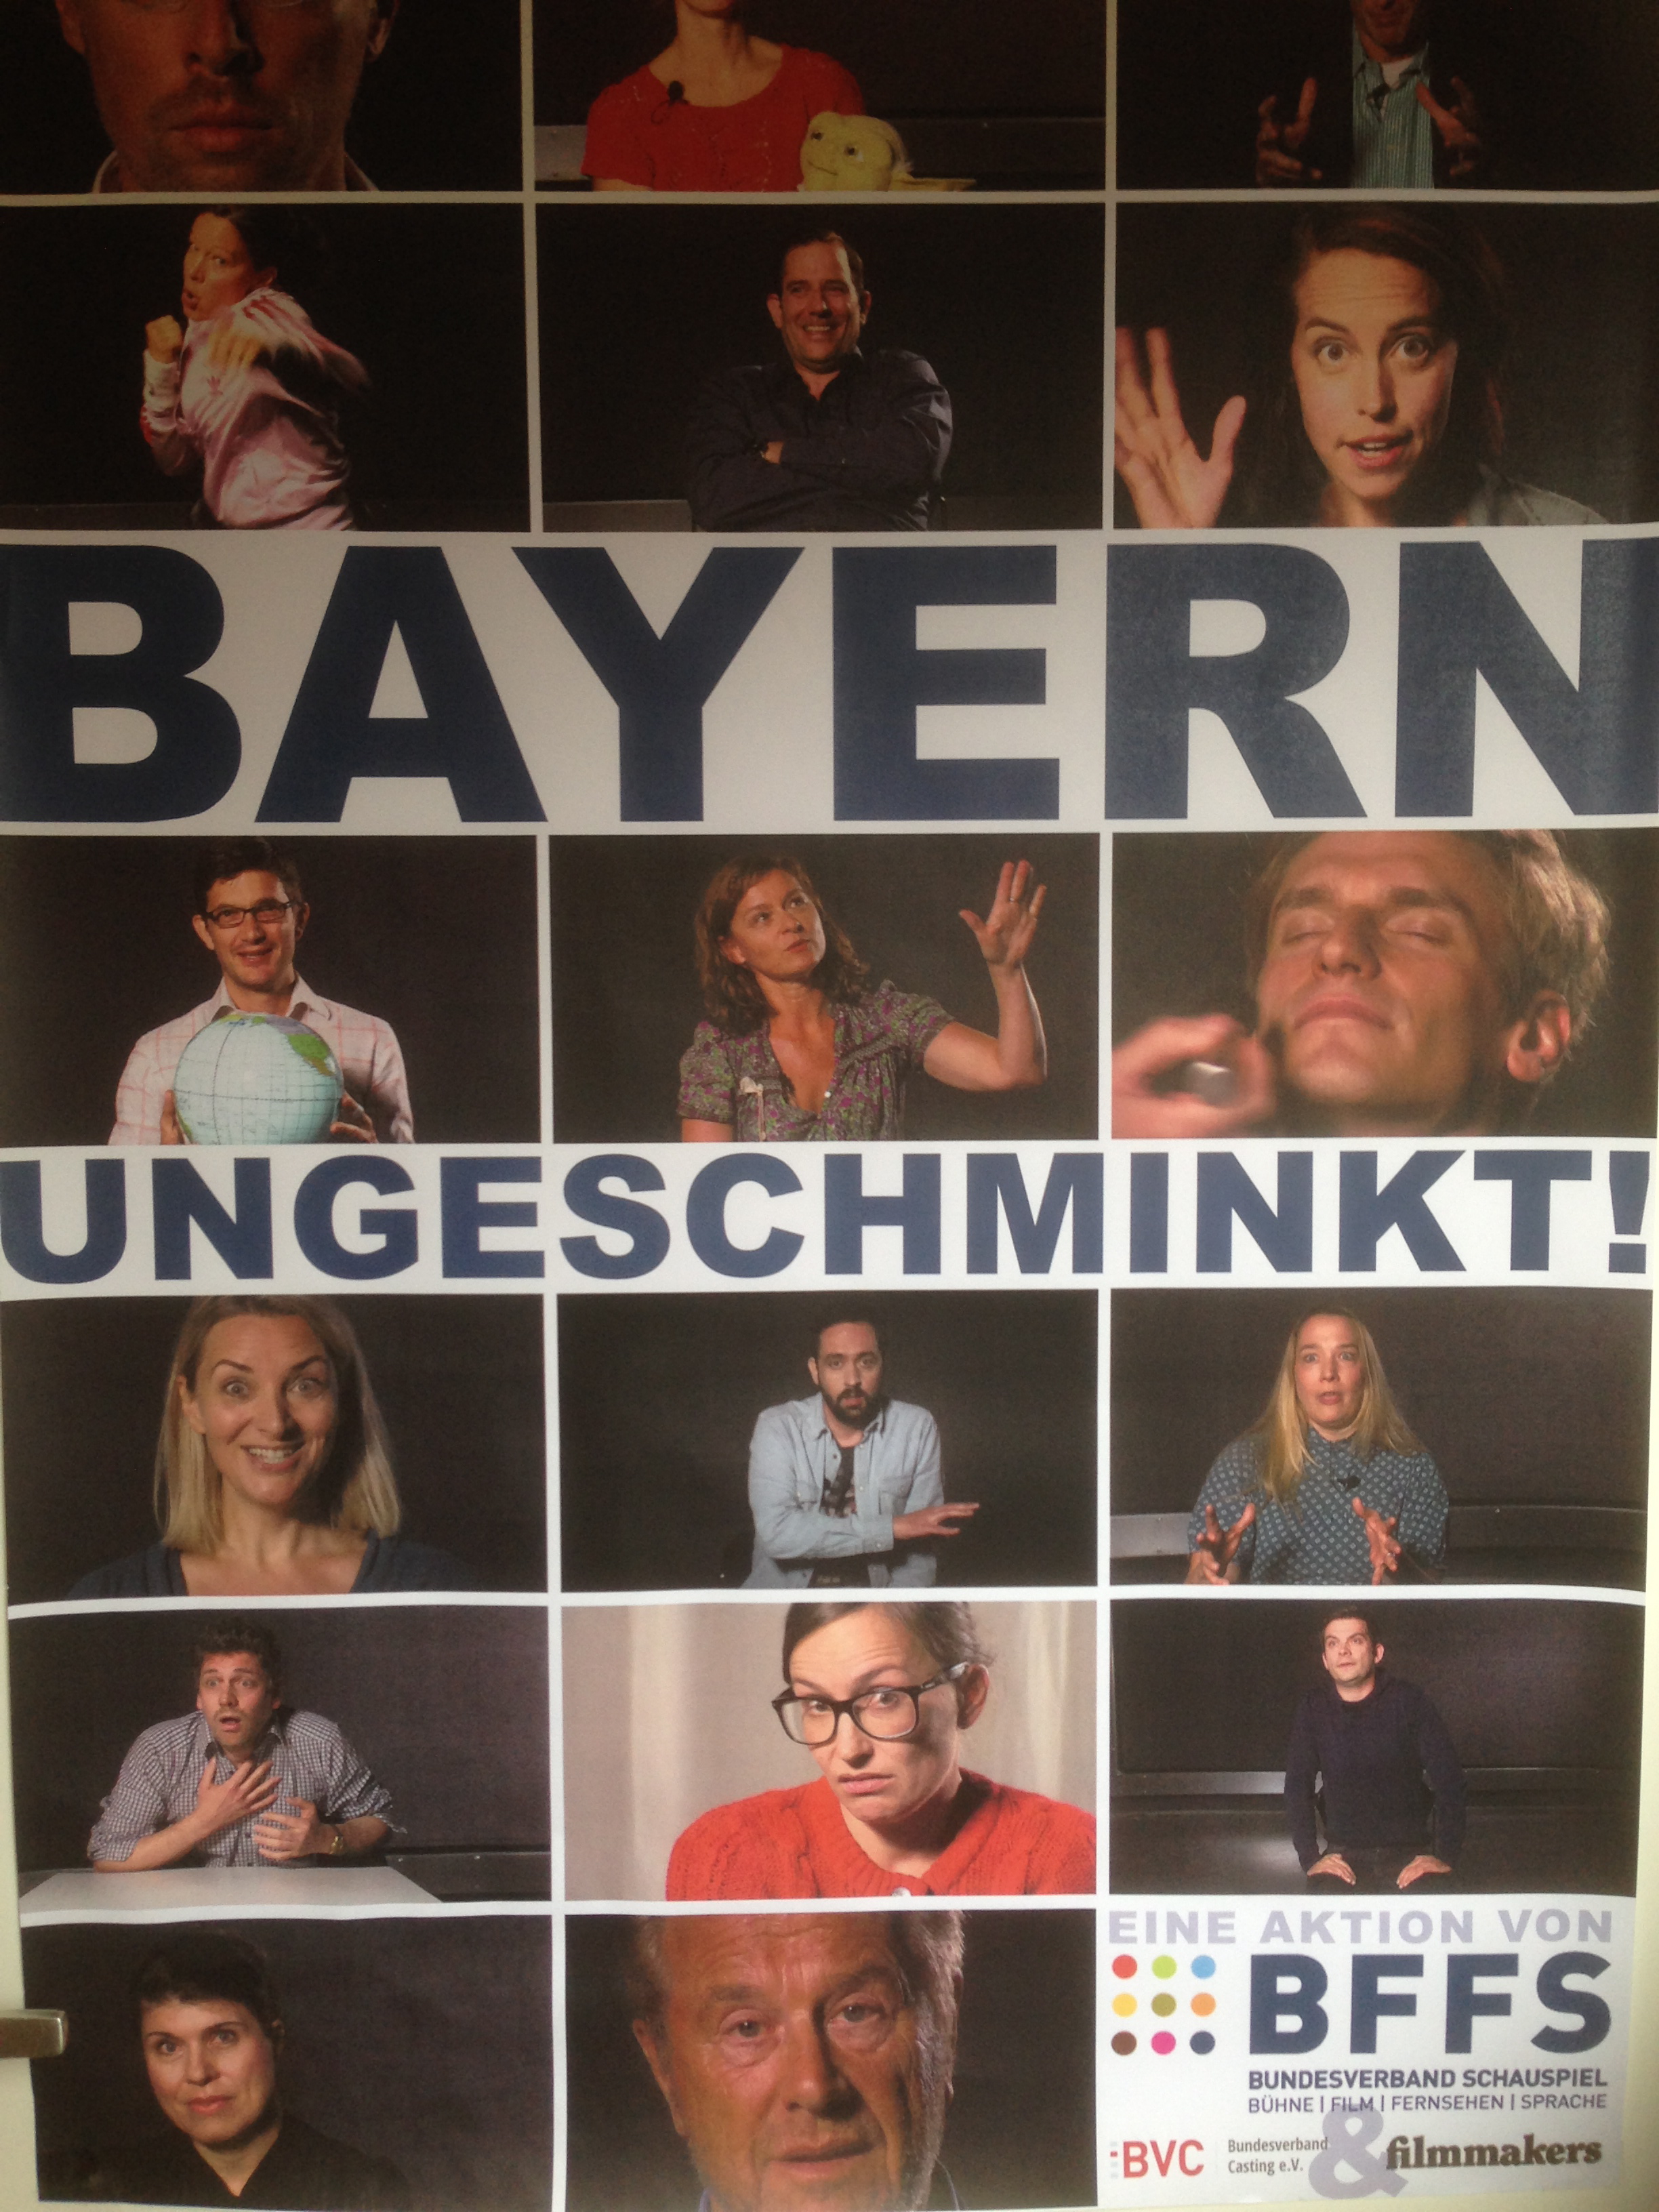 Bayern Ungeschminkt vom BFFS 